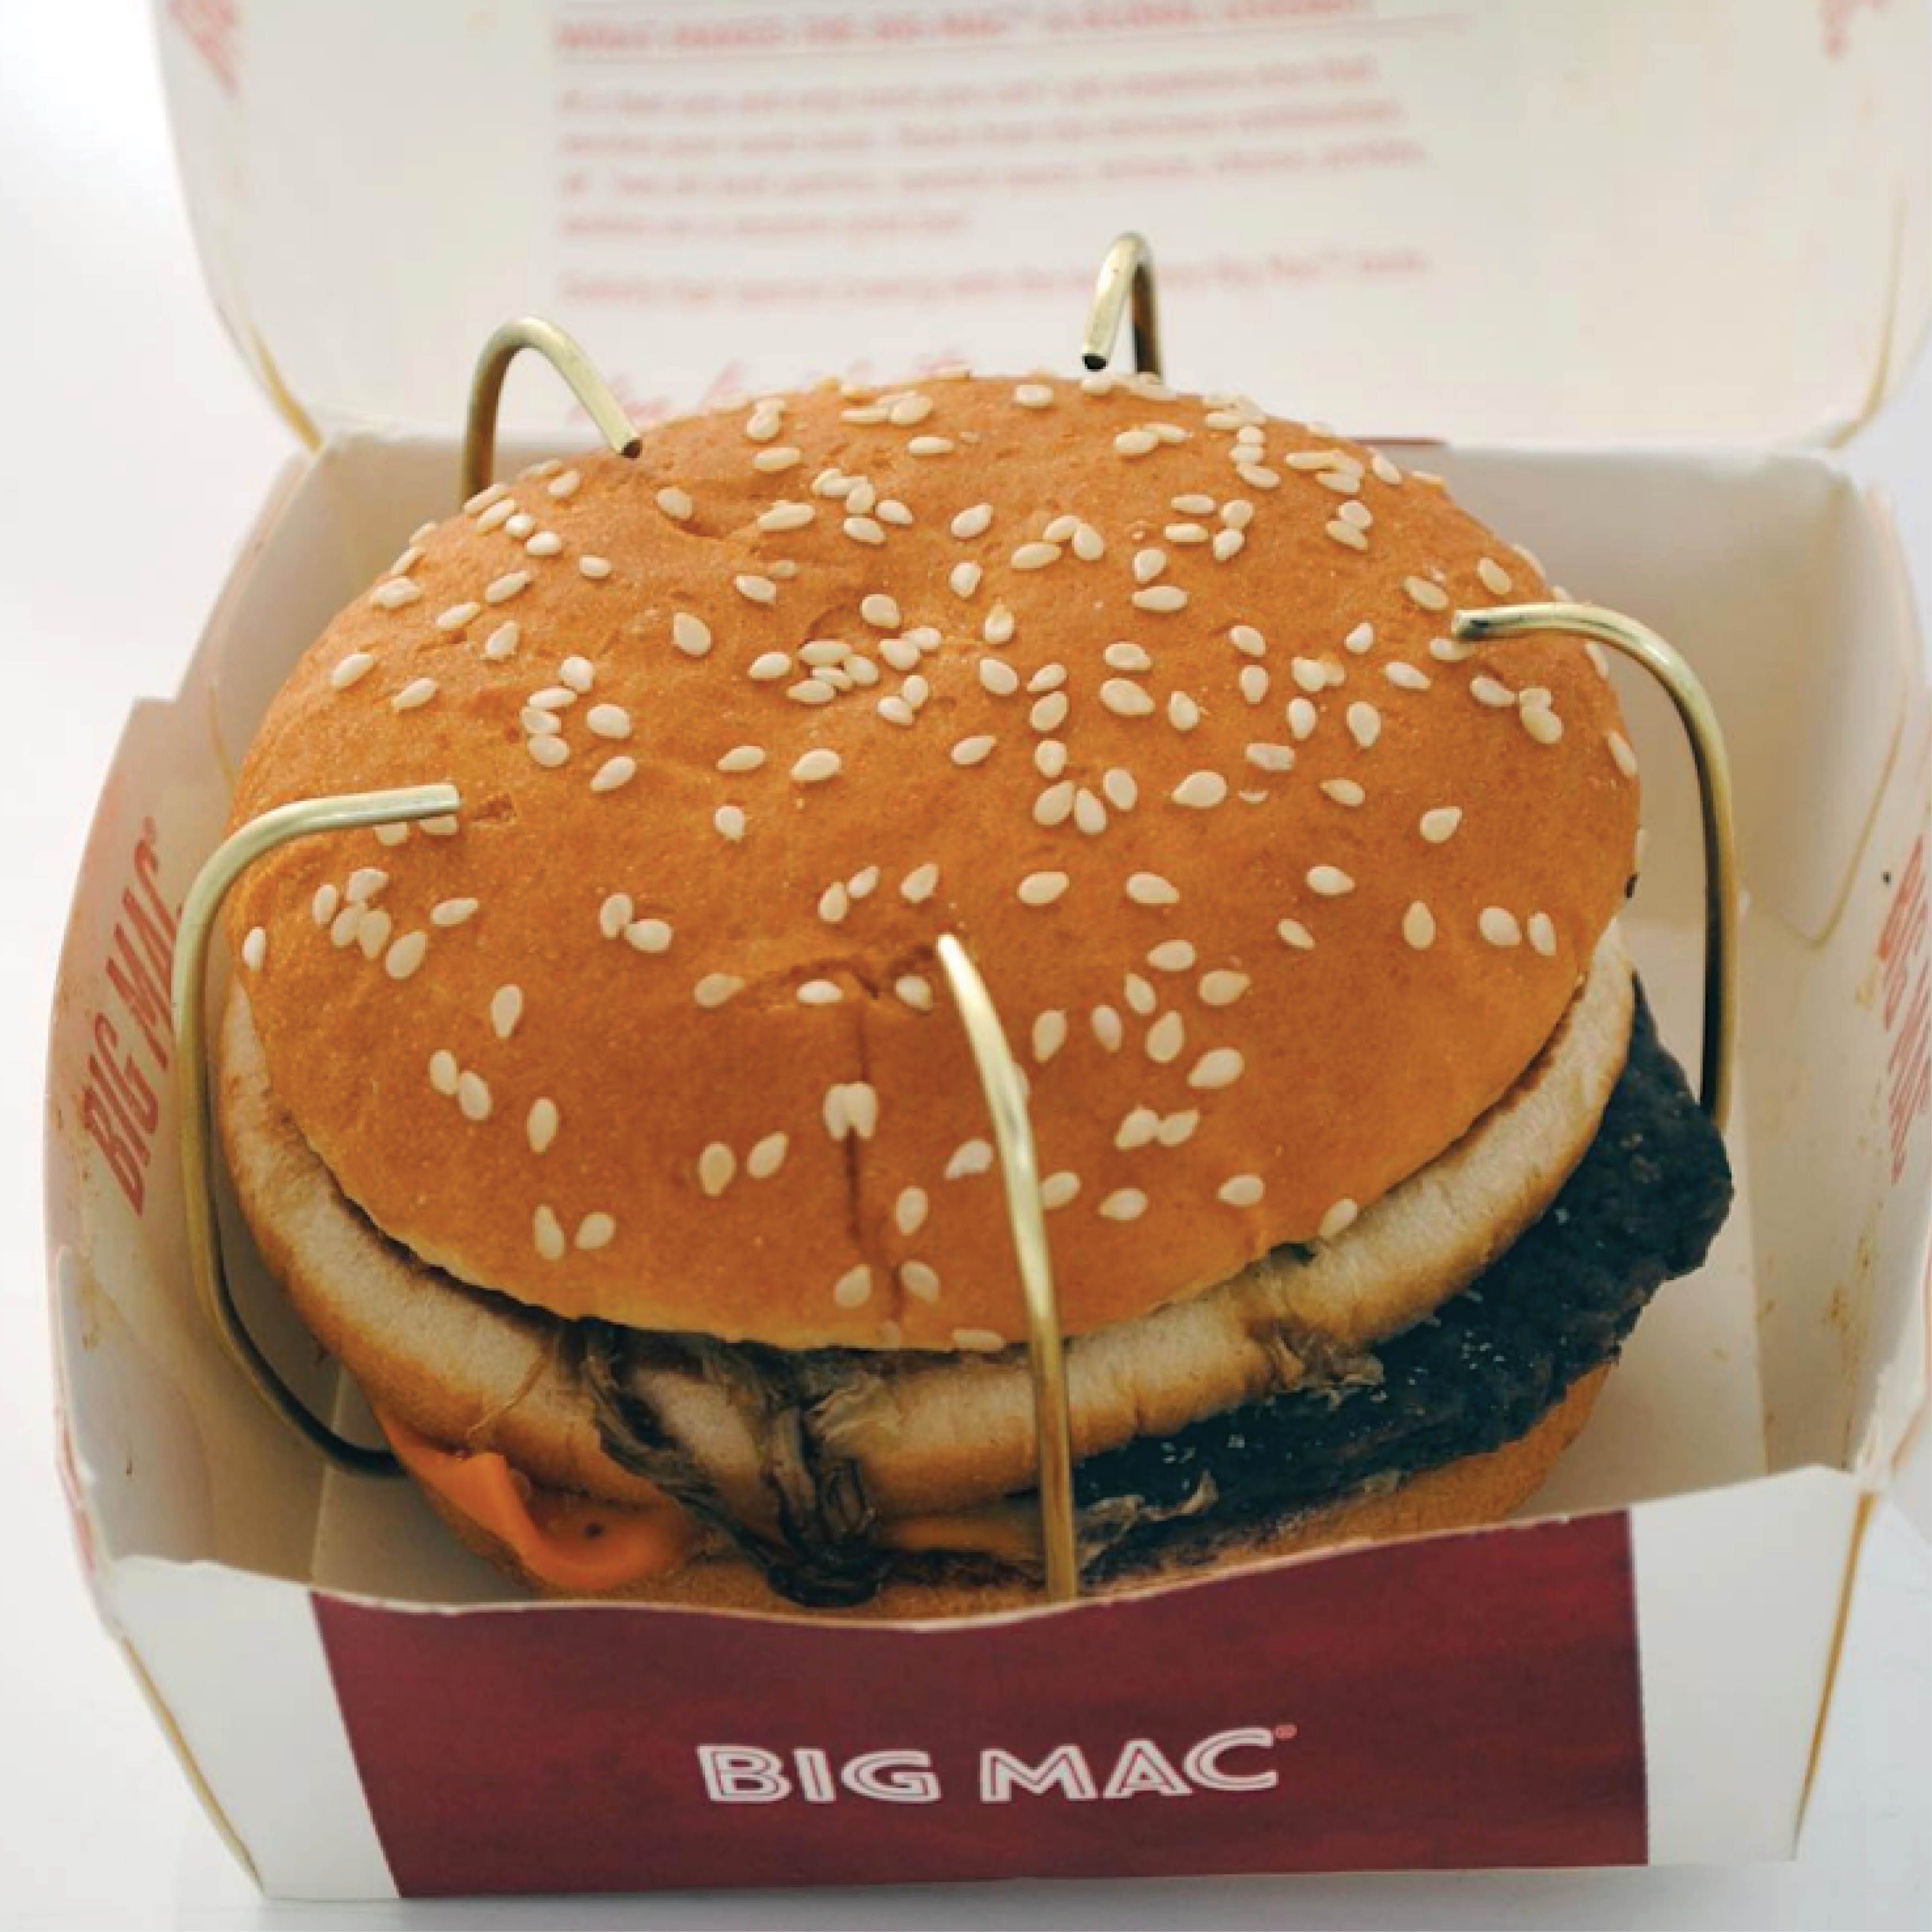 Emma Bugg, Big Mac, photo courtesy of designer